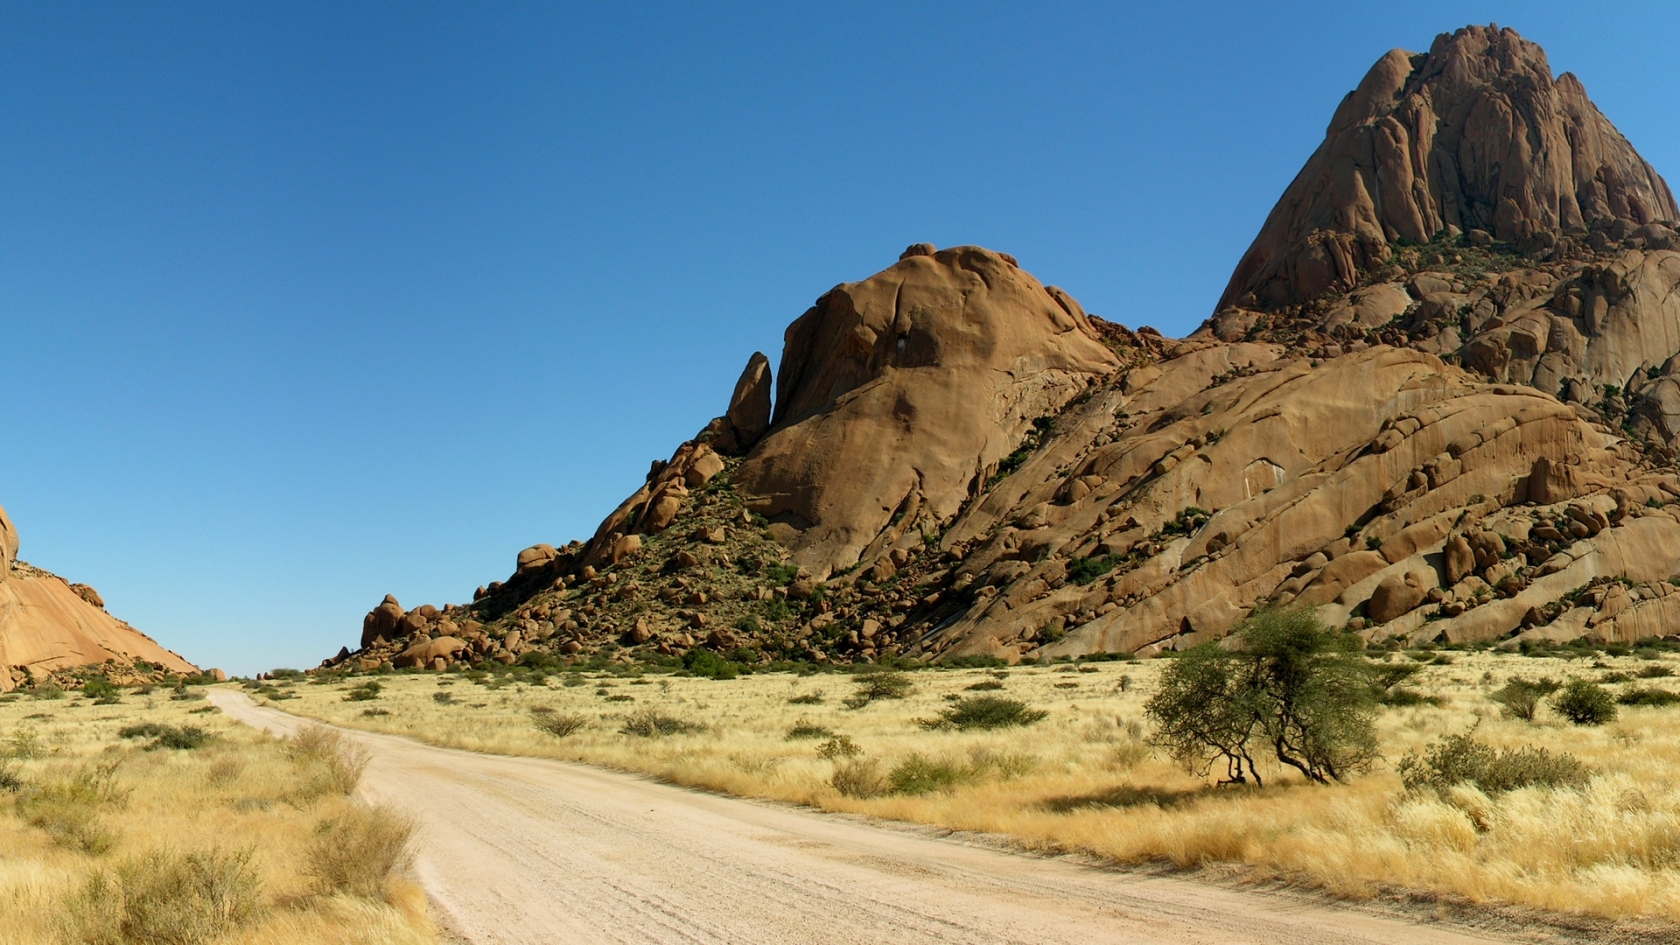 Road in Desert for 1680 x 945 HDTV resolution